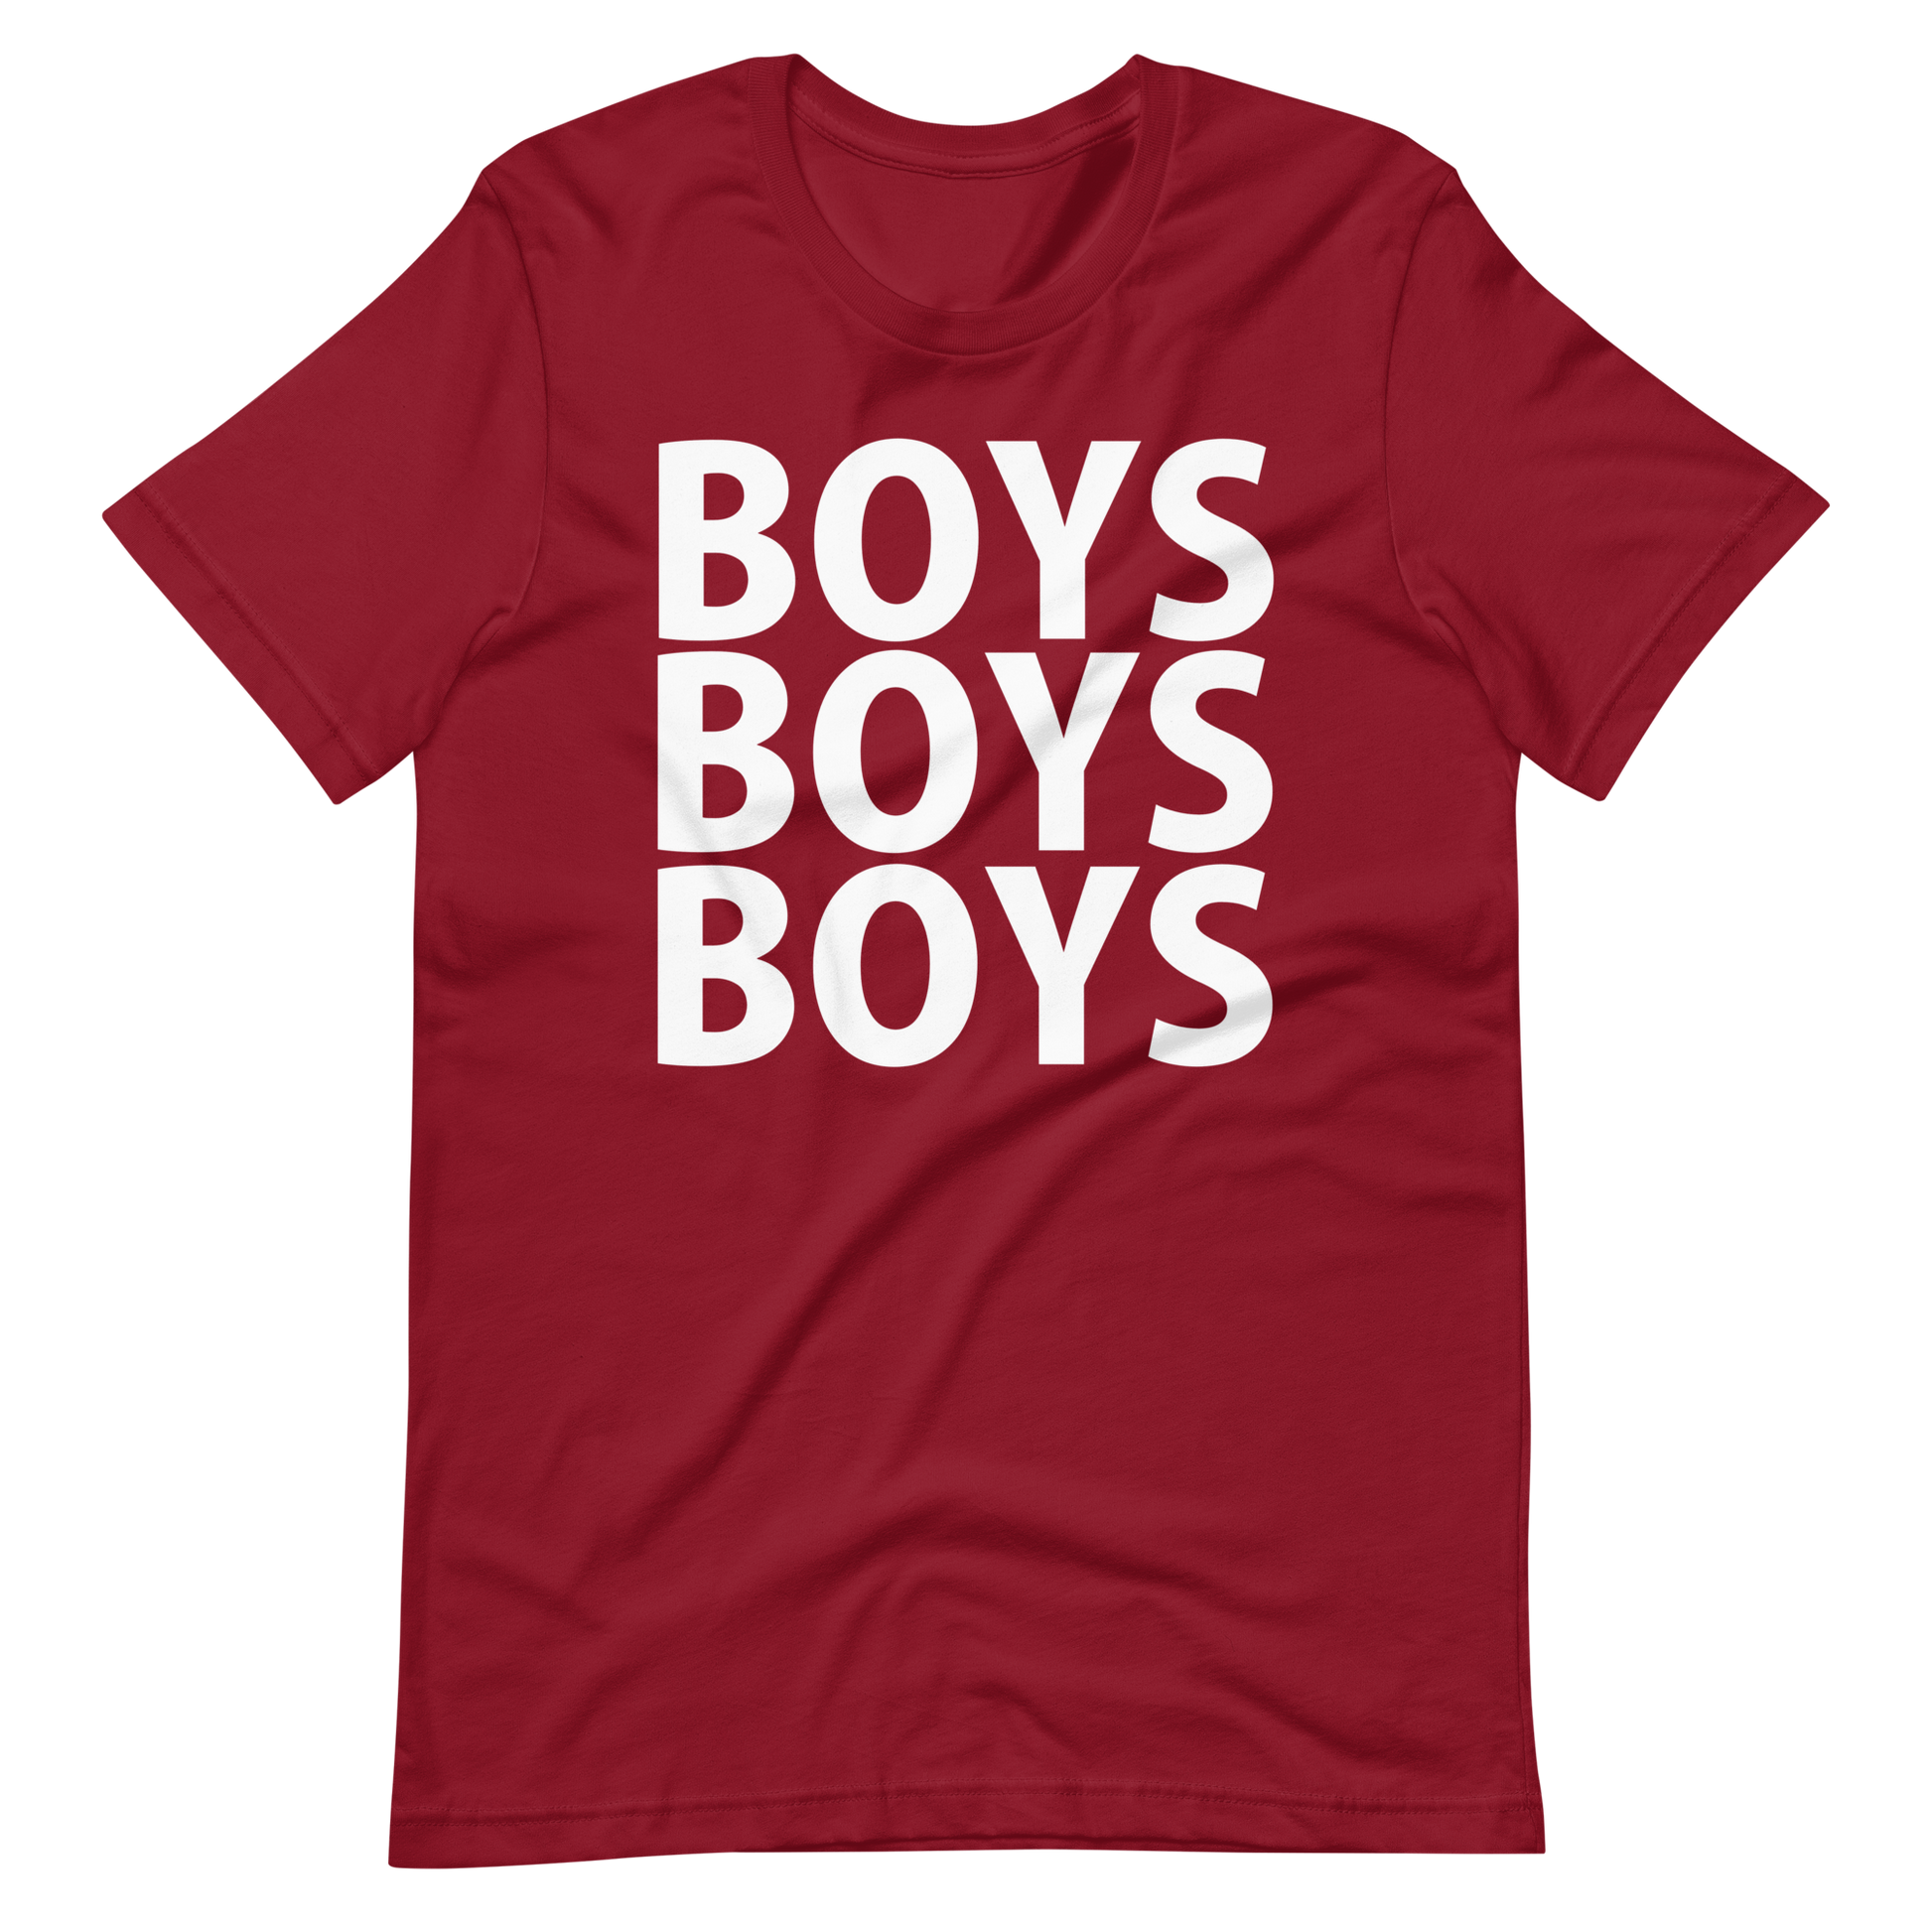 Boys Boys Boys T-Shirt - Cardinal